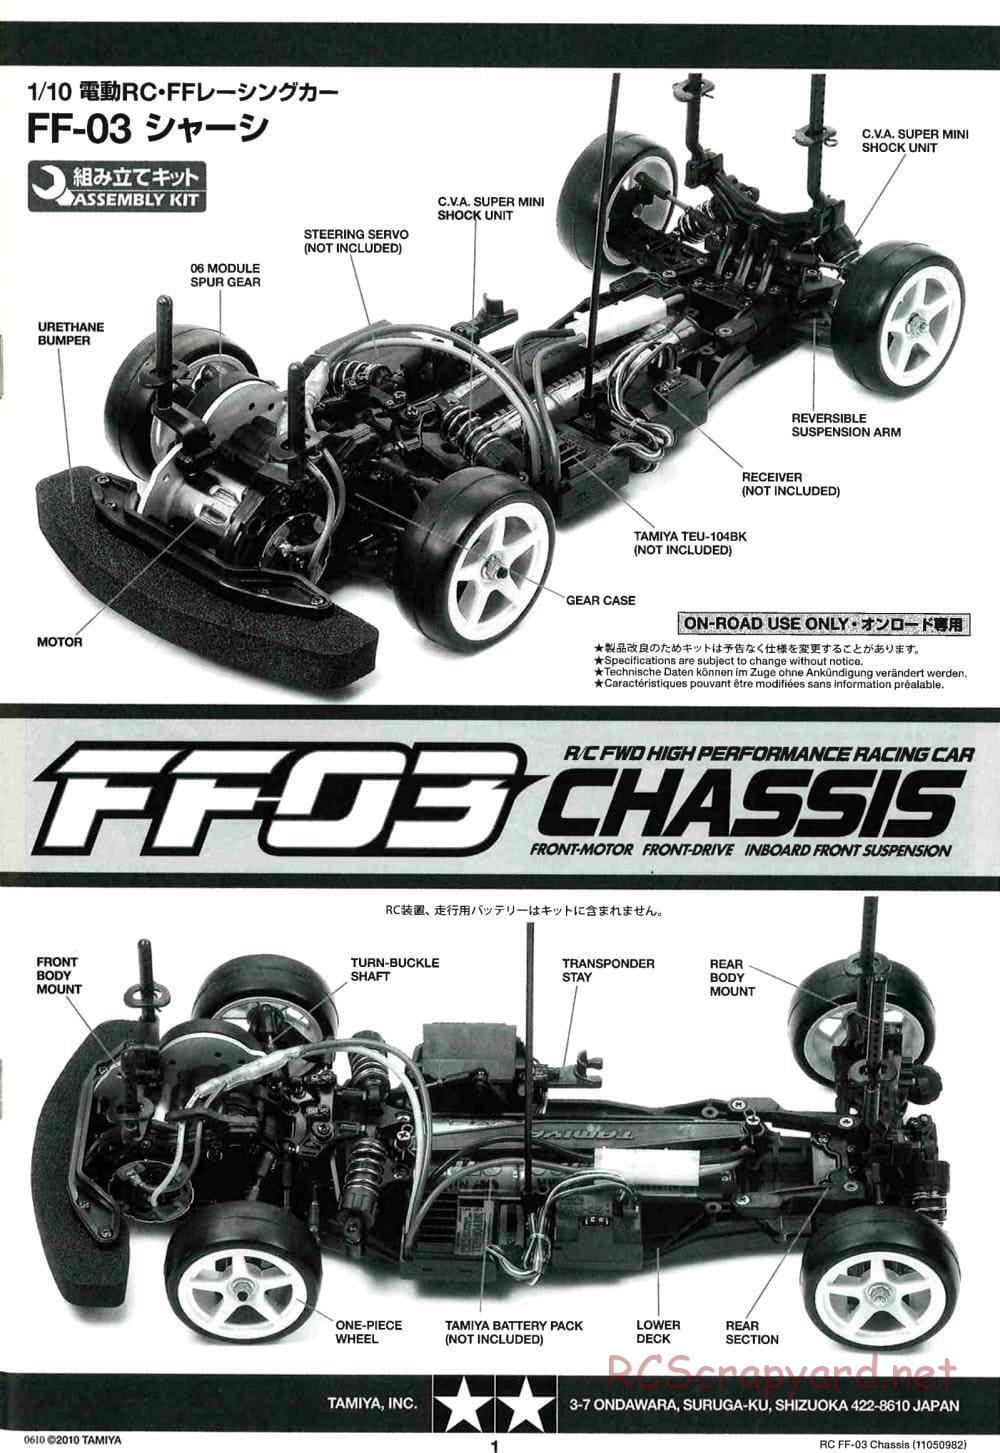 Tamiya - Honda CR-Z - FF-03 Chassis - Manual - Page 1